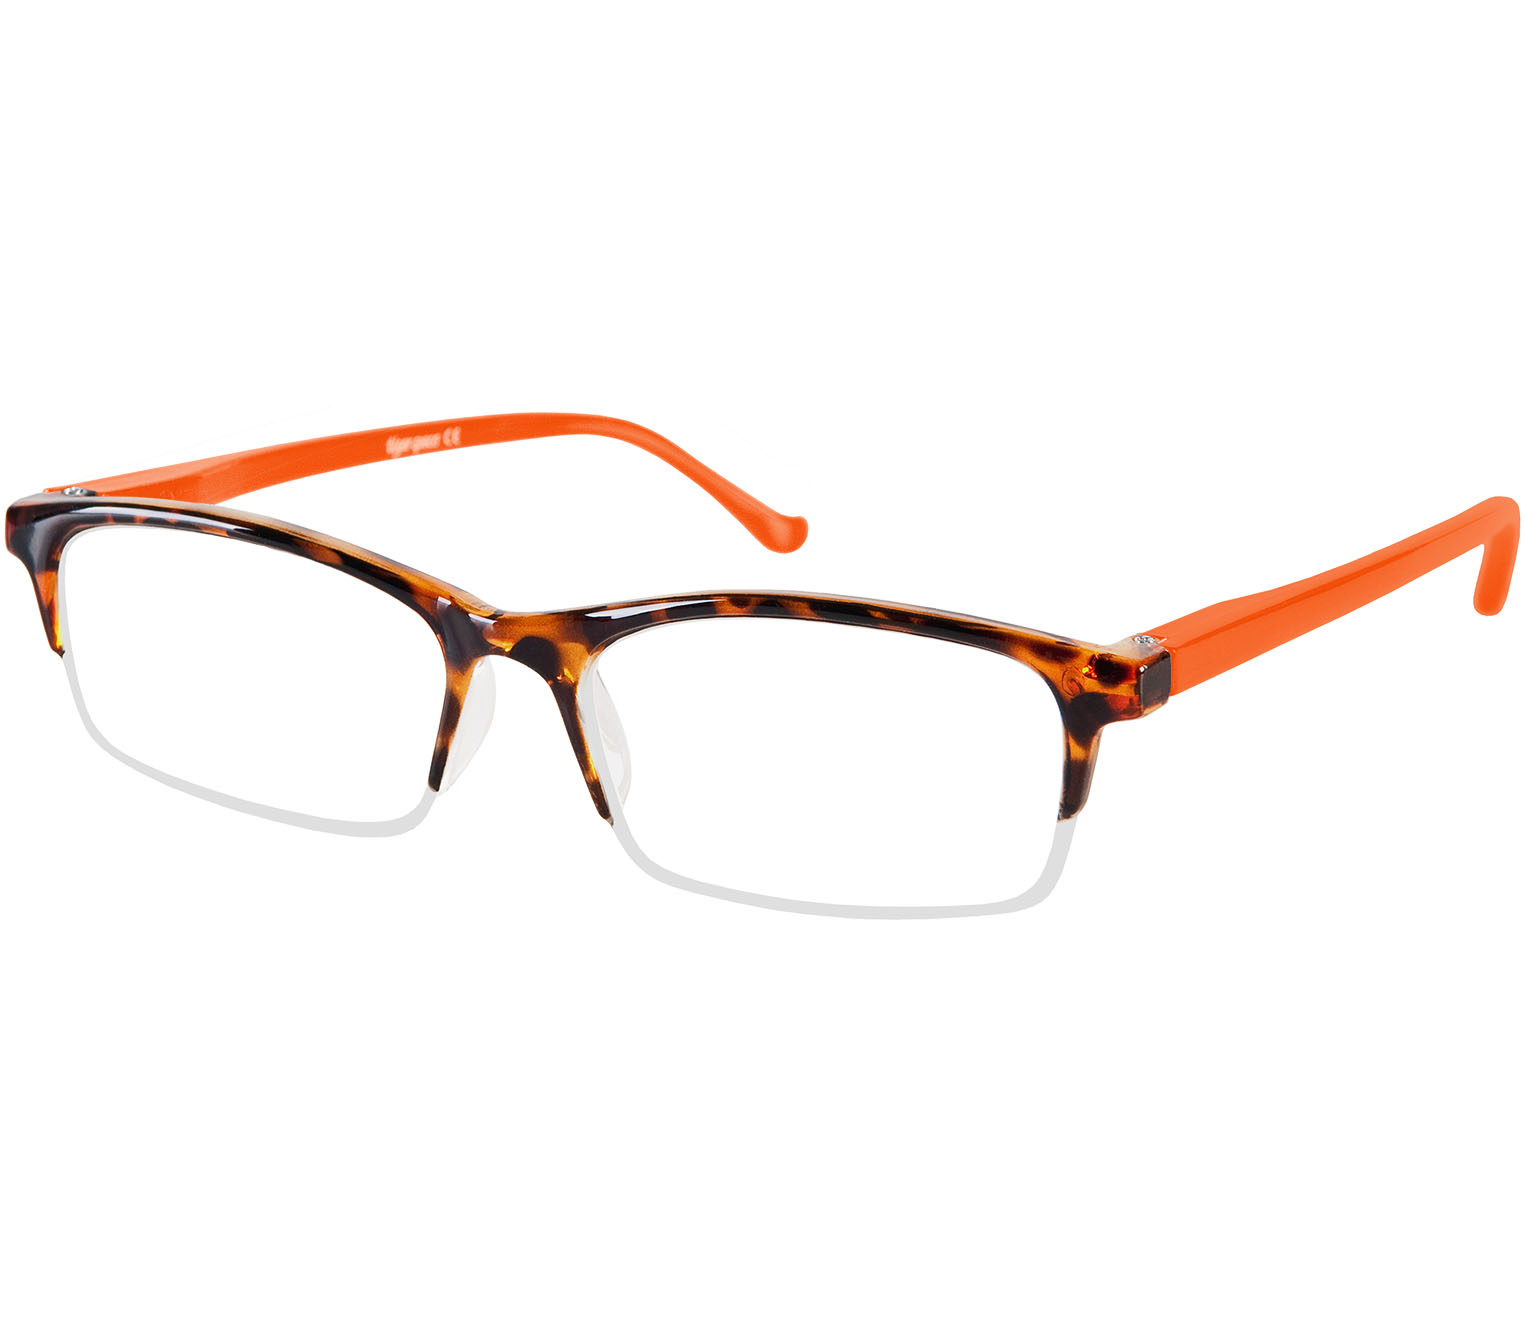 Main Image (Angle) - Yoyo (Orange) Reading Glasses